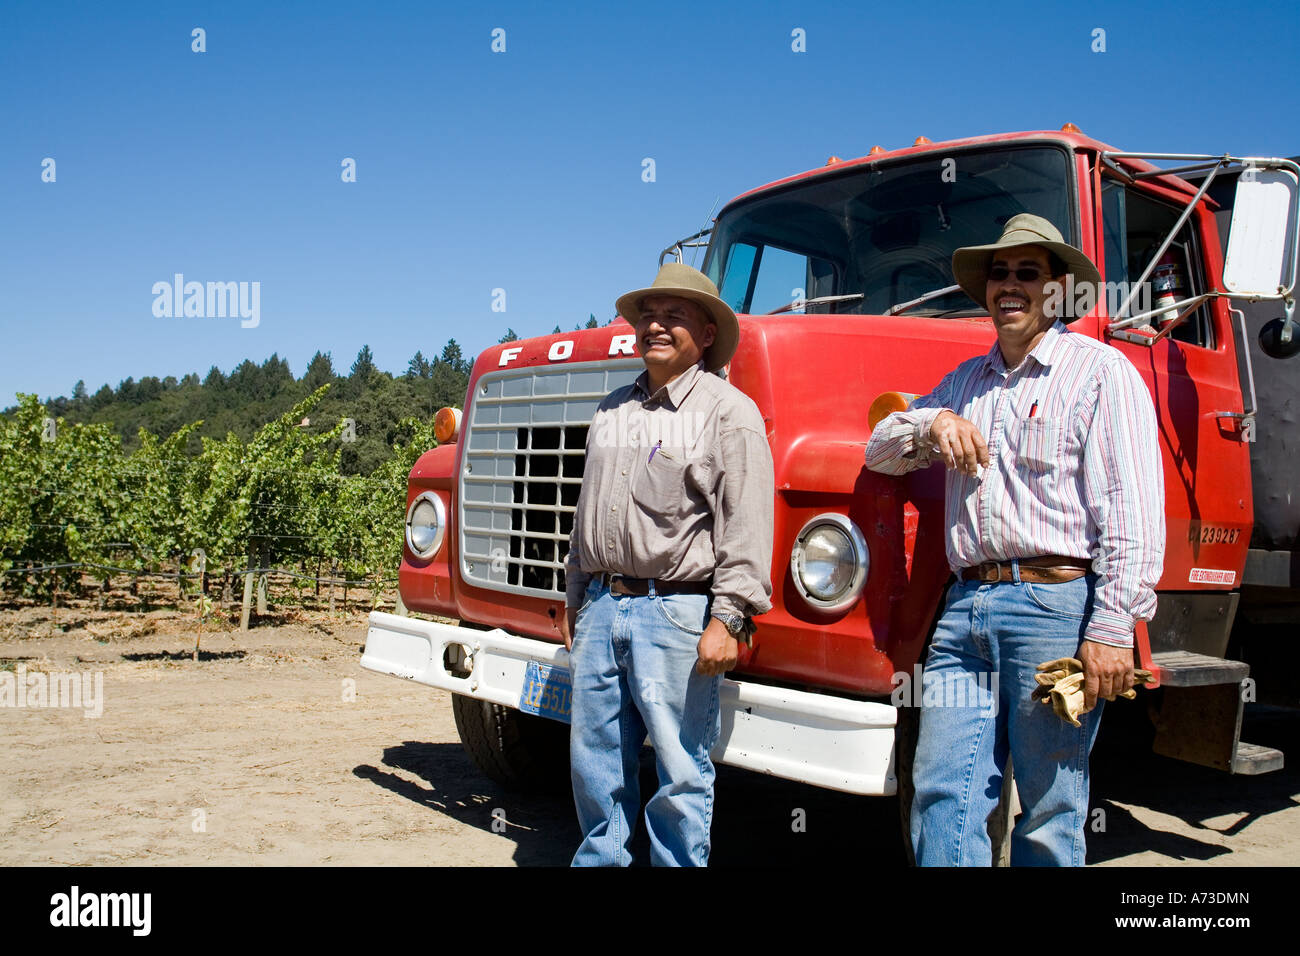 Les travailleurs mexicains à vignobles de Napa Valley Californie USA Banque D'Images